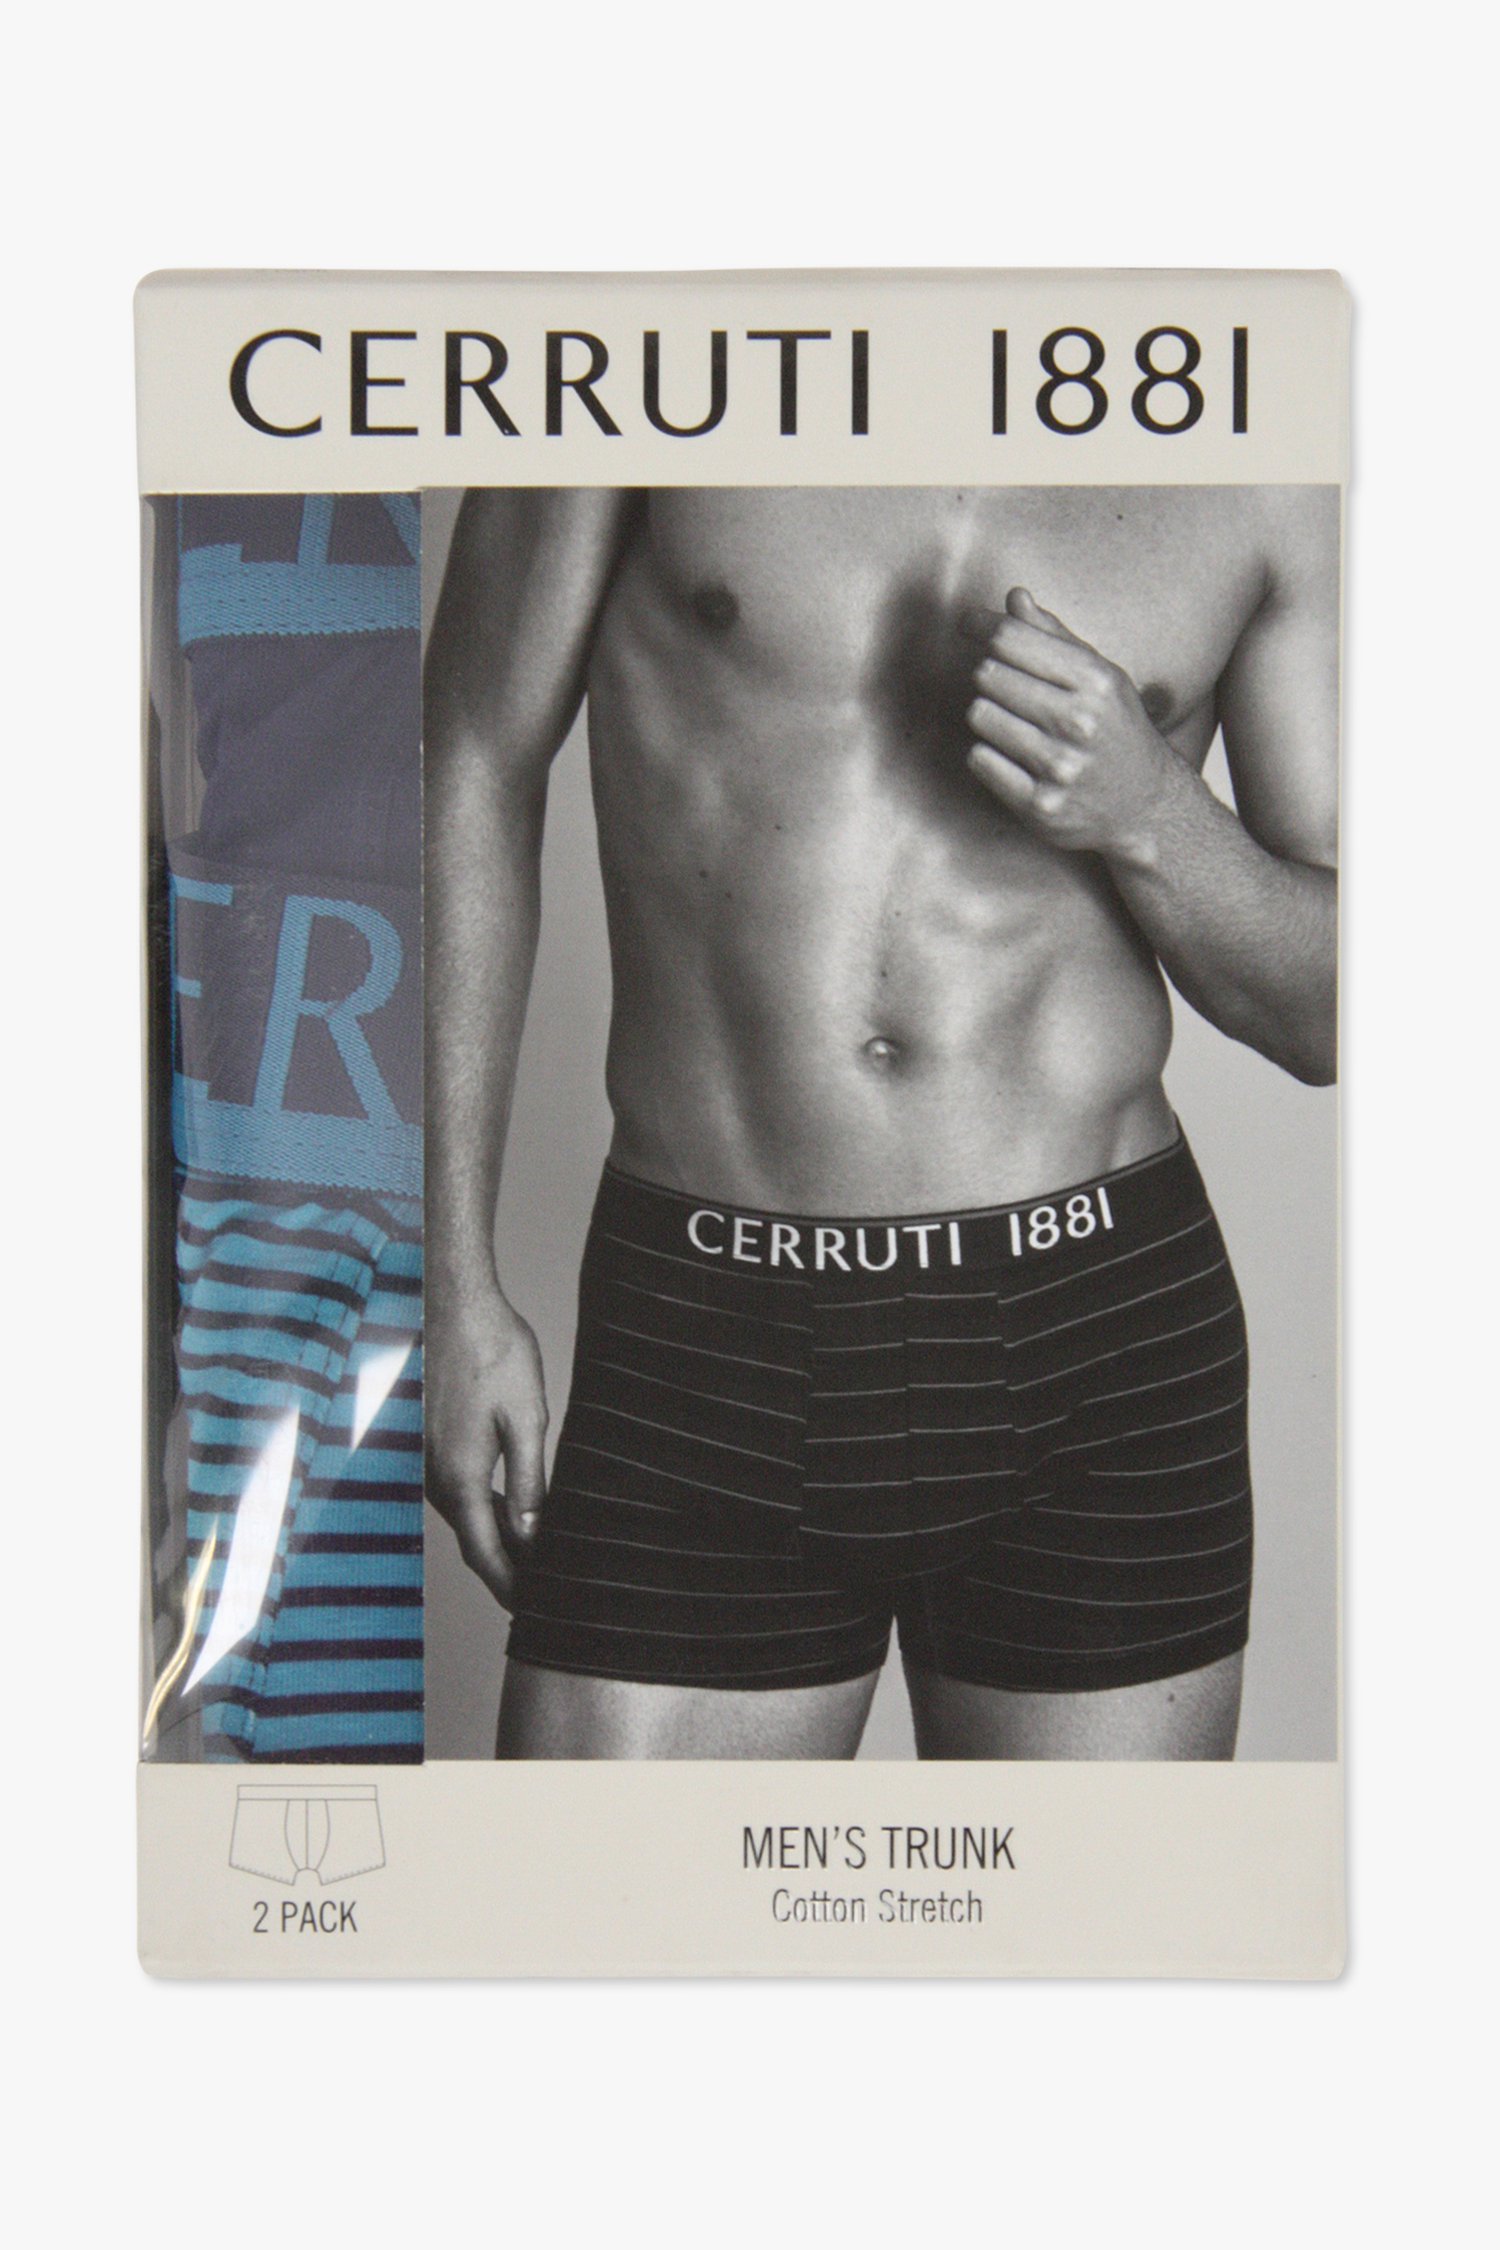 Blauwe boxershorts met en zonder strepen - 2 pack van Cerruti 1881 voor Heren